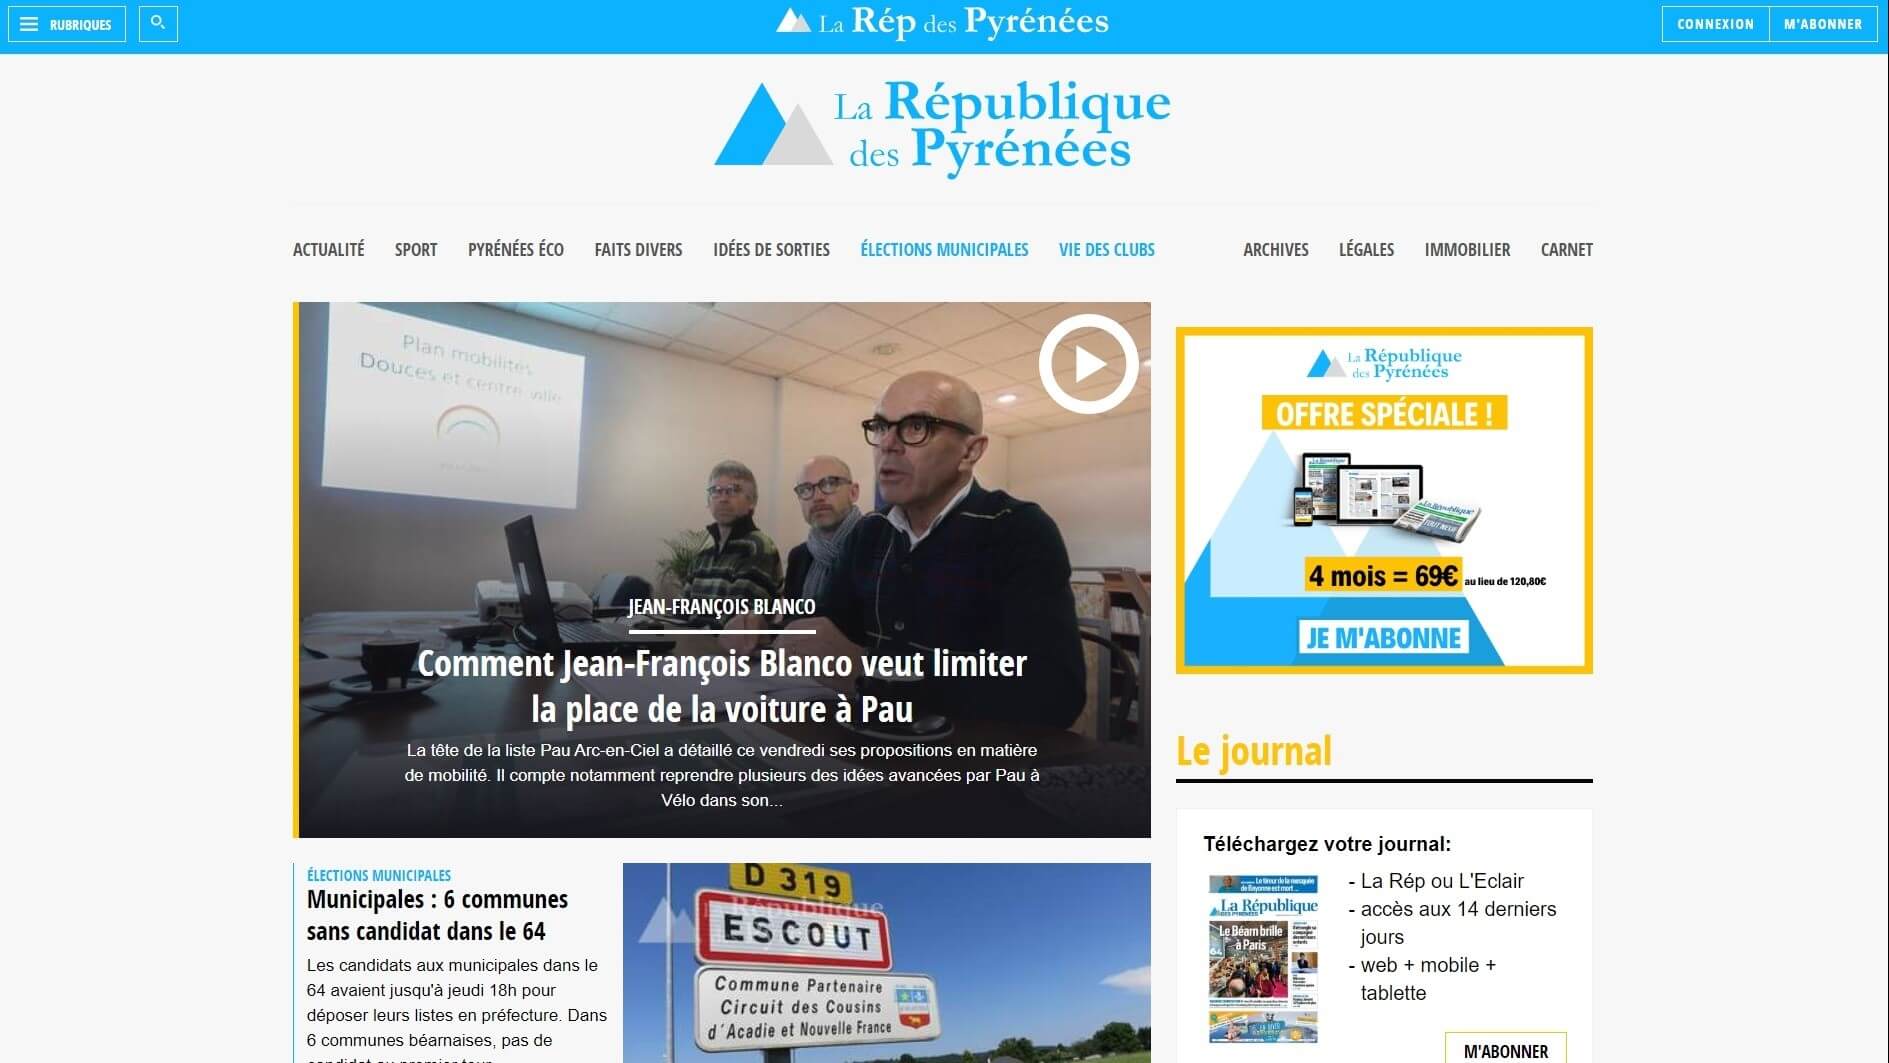 france newspapers 35 La Republique des Pyrenees website